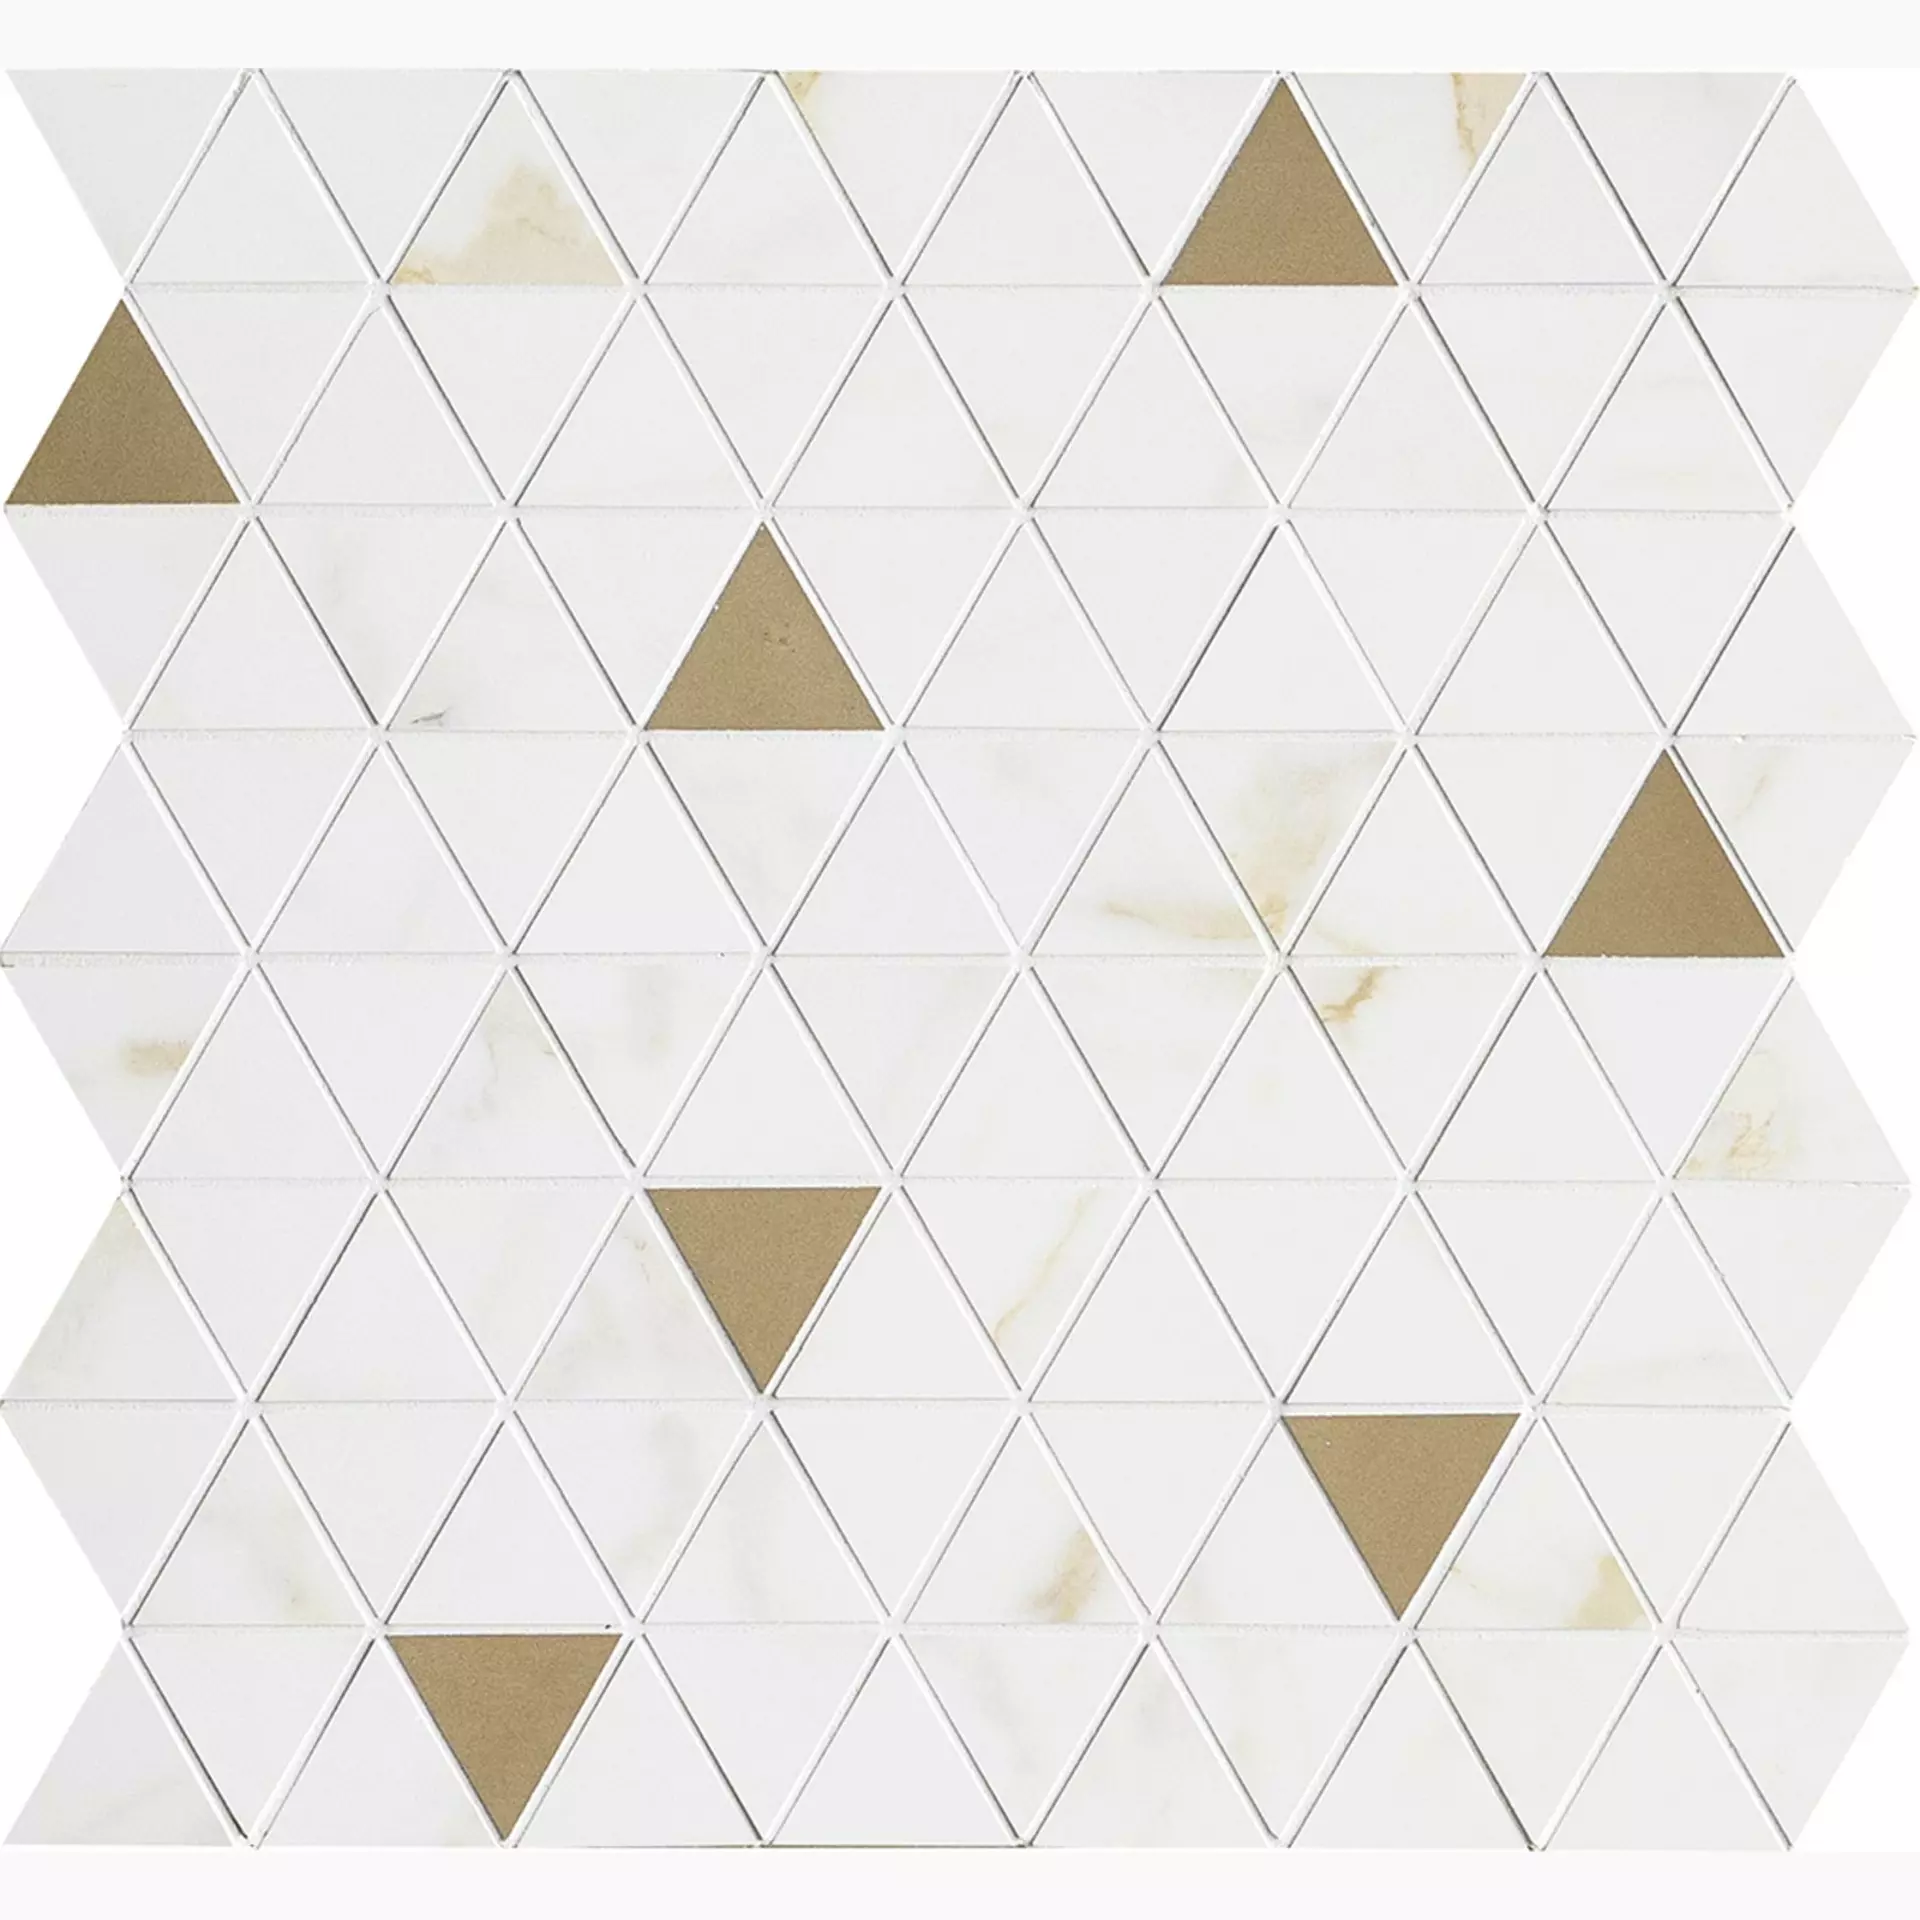 Wandfliese Marazzi Allmarble Wall Golden White Satinato Golden White M8H1 satiniert 40x43cm Mosaik Tria 6mm